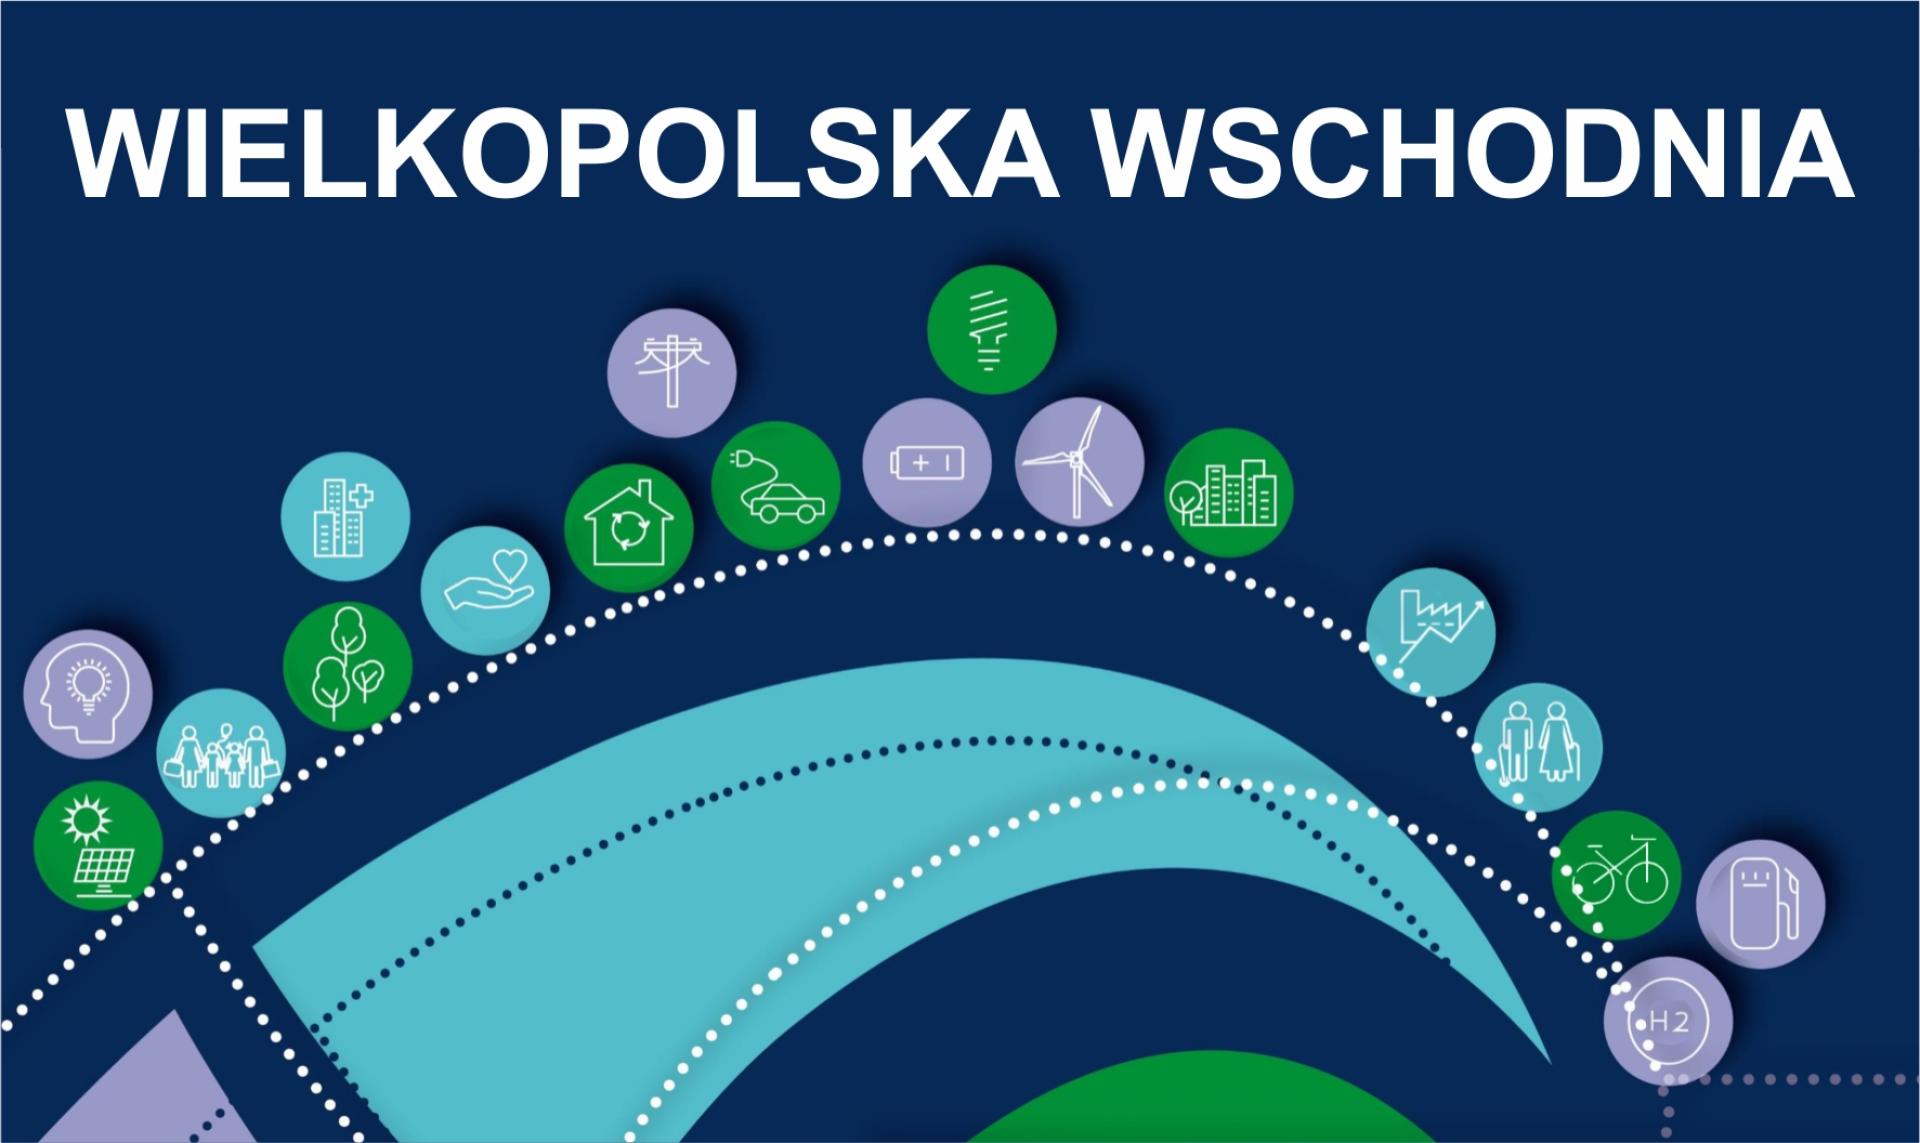 Konsultacje projektu Strategii rozwoju Wielkopolski Wschodniej 2040 wraz z Prognozą oddziaływania na środowisko do projektu Strategii  - zobacz więcej